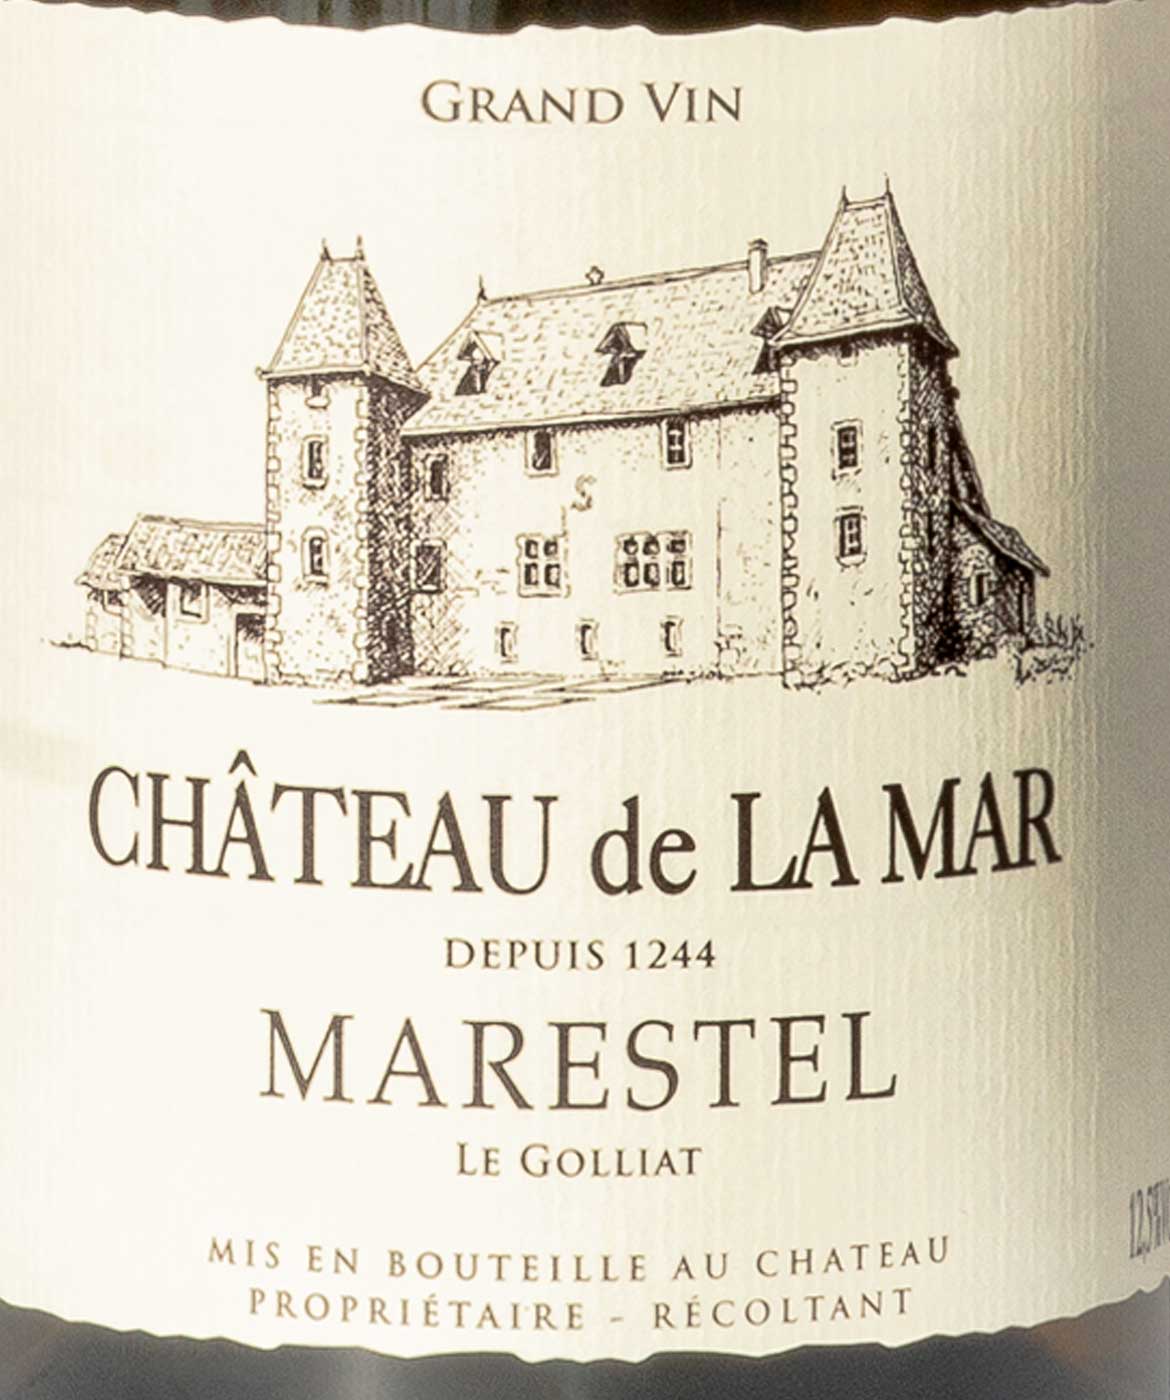 Marestel Le Golliat - Etiquette vins blancs de savoie